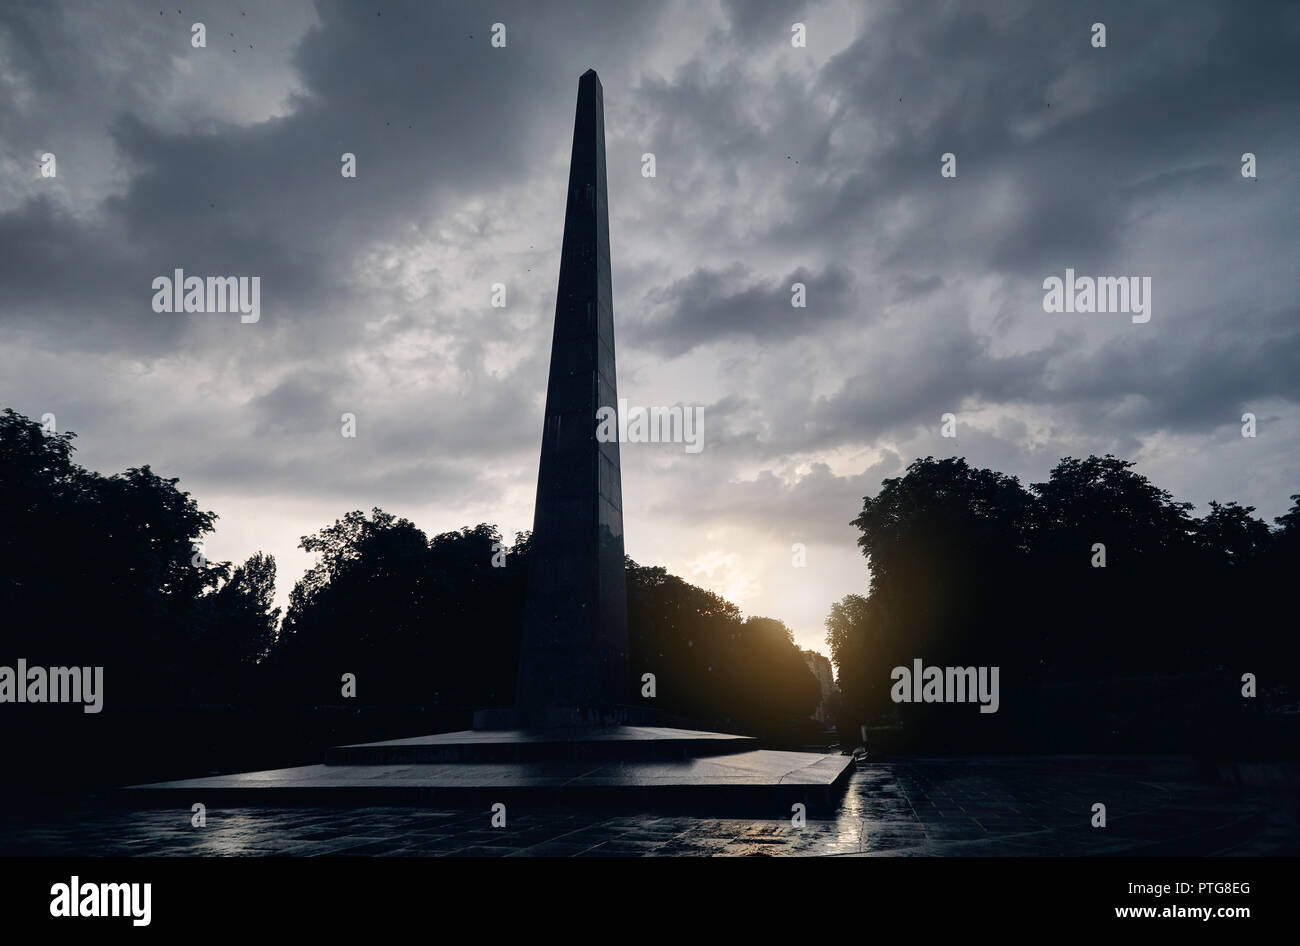 Pilar monumento en el cielo nublado en el Parque de la gloria eterna en Kiev, Ucrania Foto de stock